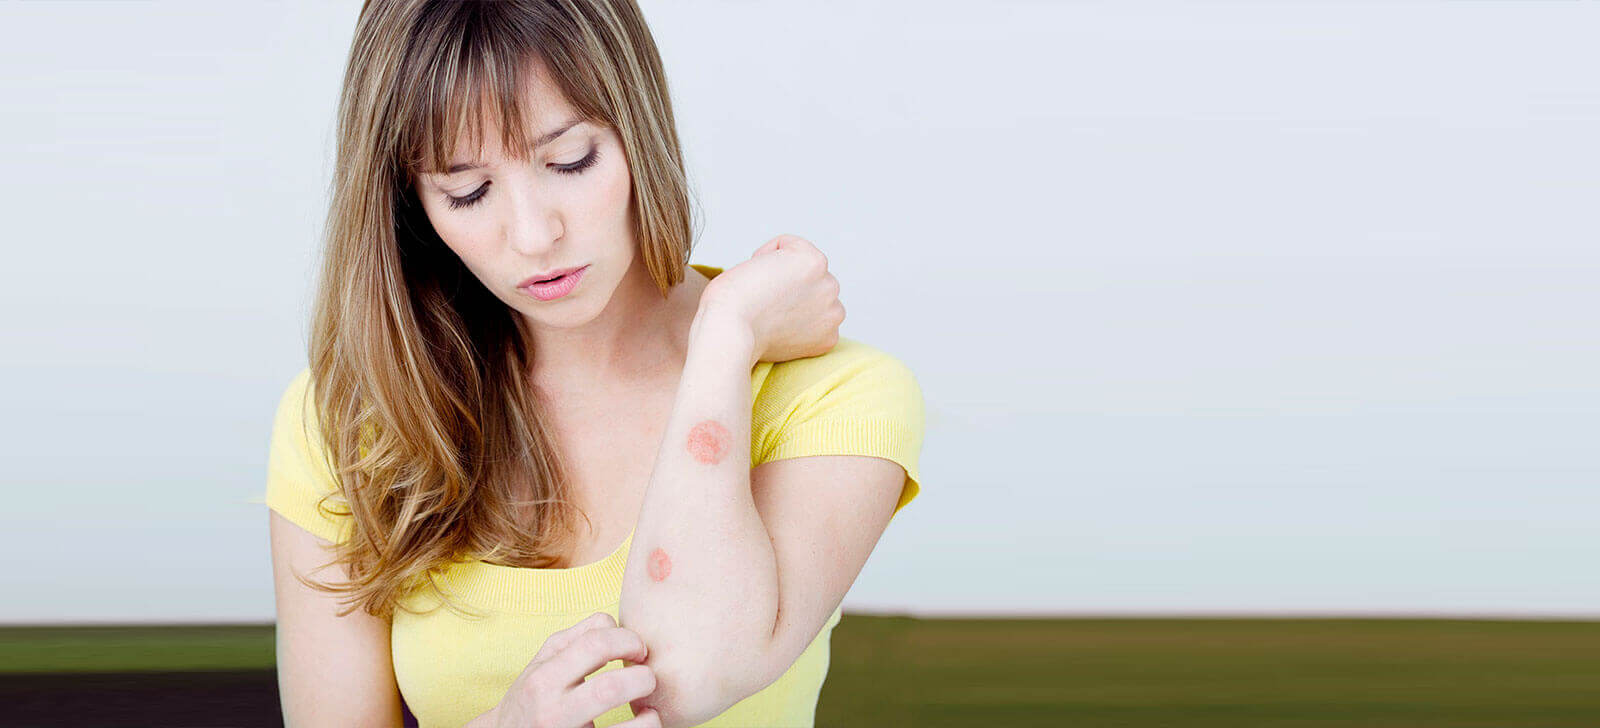 Micose de pele: descubra o que é, as causas e tratamentos